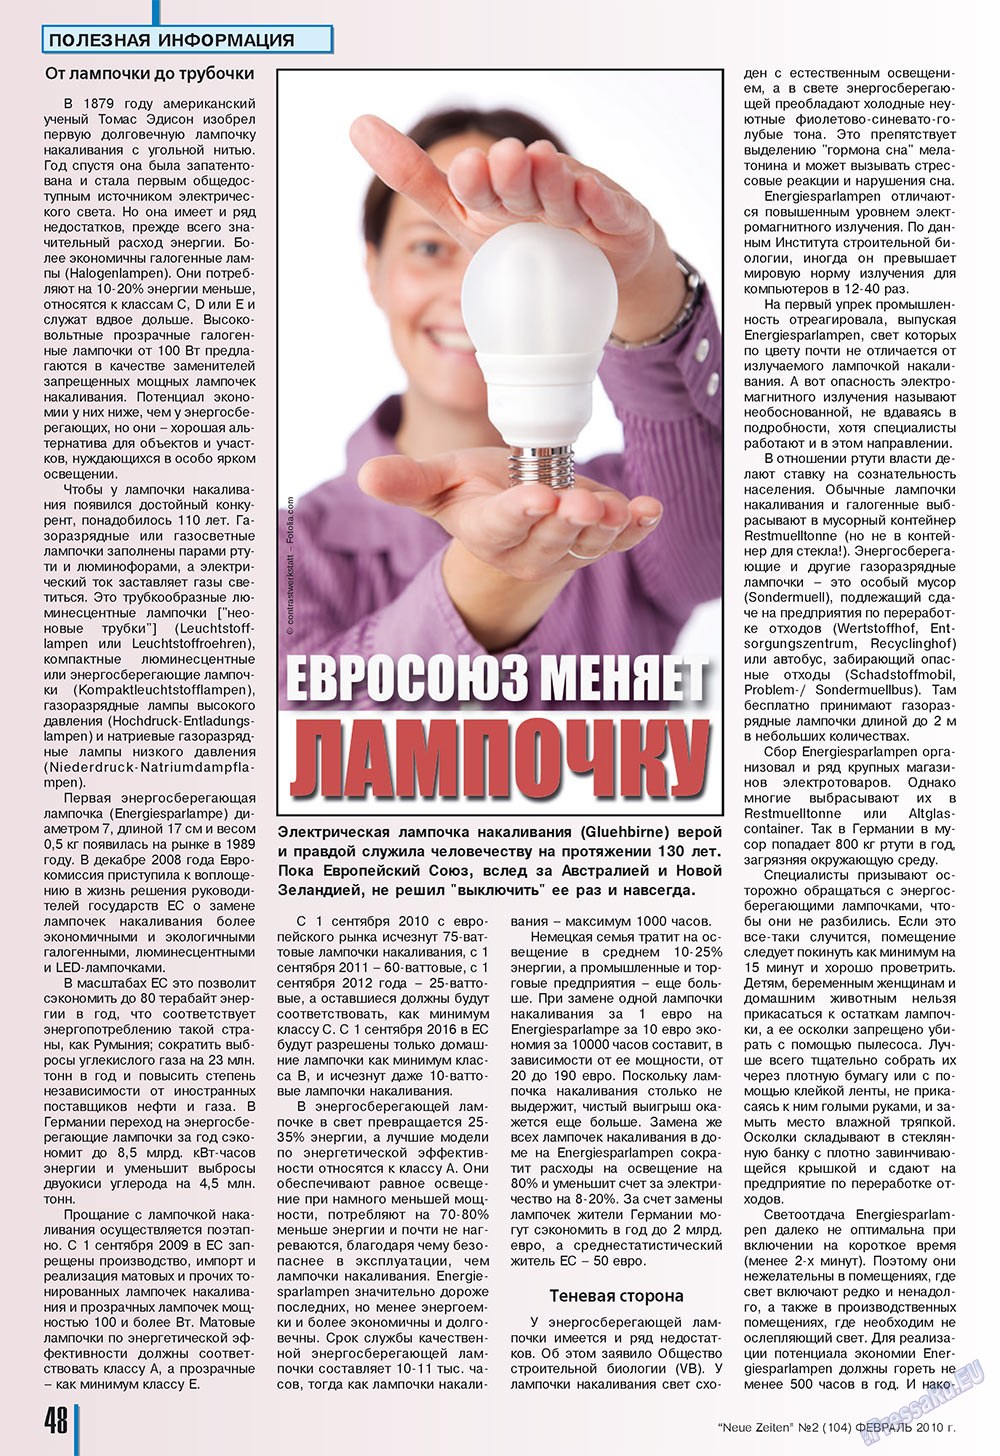 Neue Zeiten, журнал. 2010 №2 стр.48